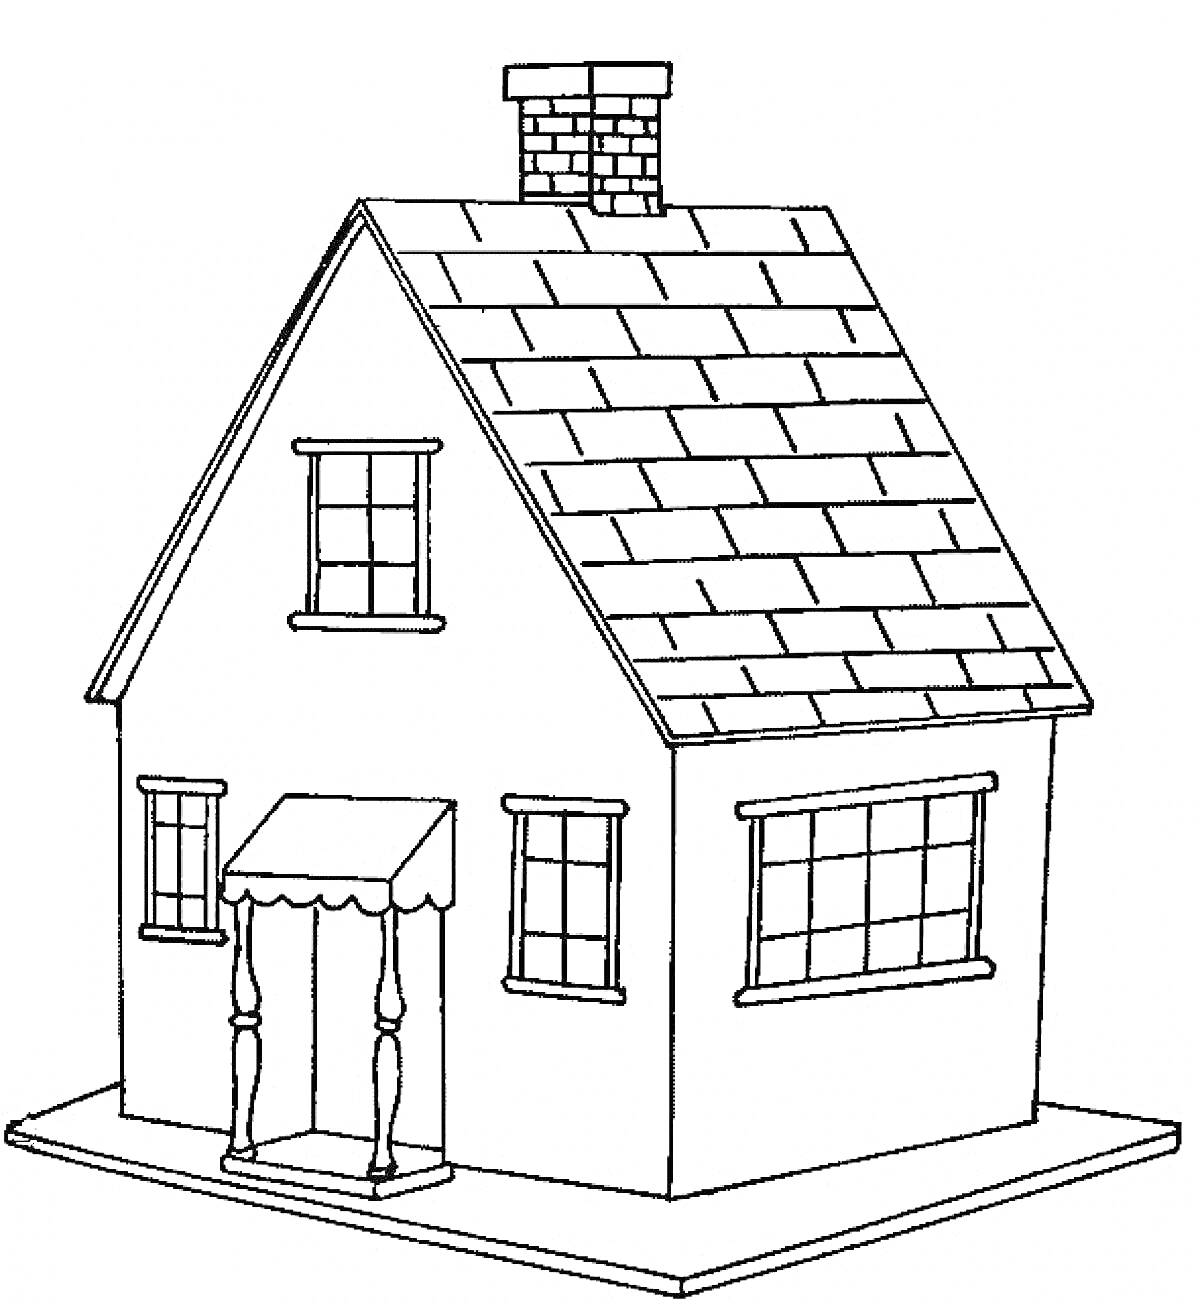 Раскраска Дом с черепичной крышей, крыльцом, двумя окнами на фронтальной стене, каминной трубой и большими окнами на боковой стене